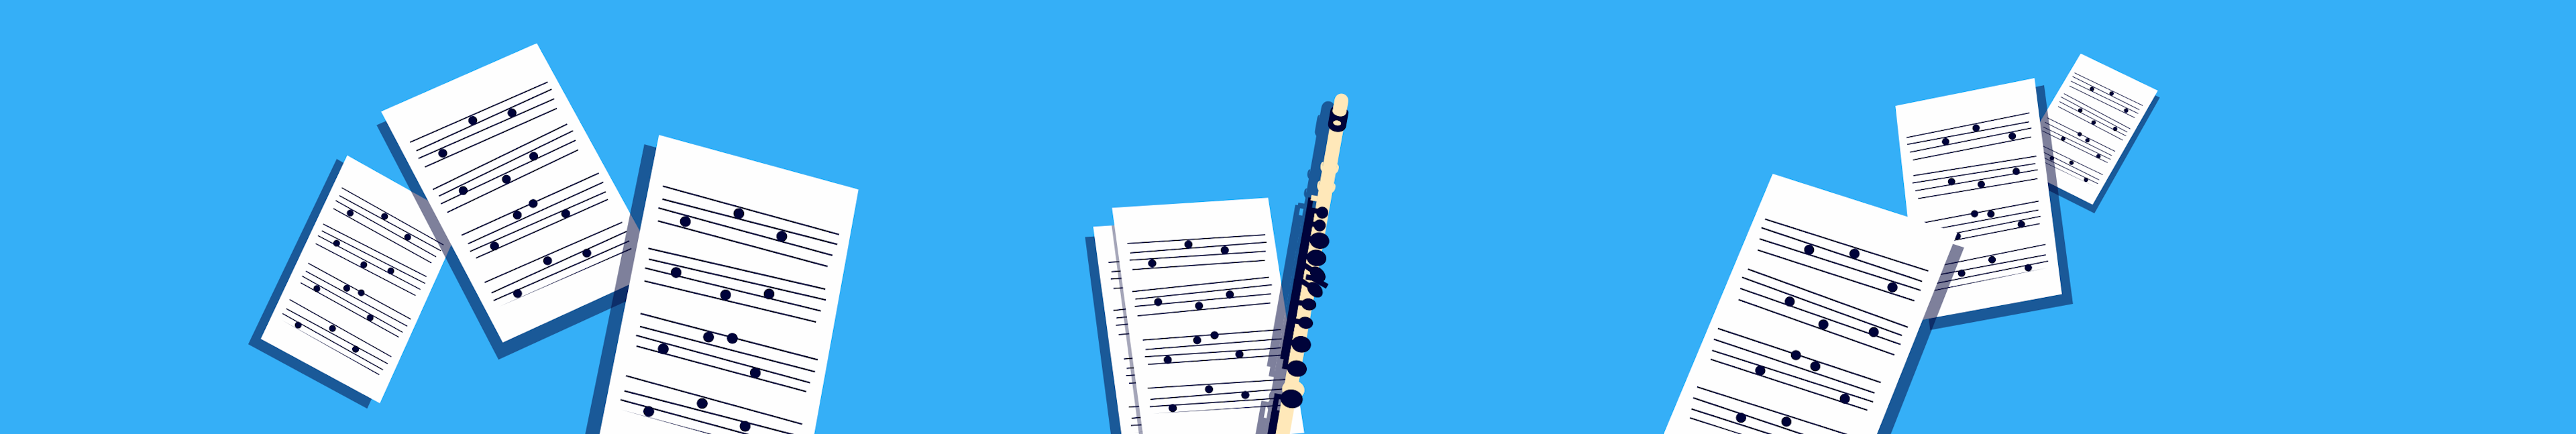 El repertorio del flautista